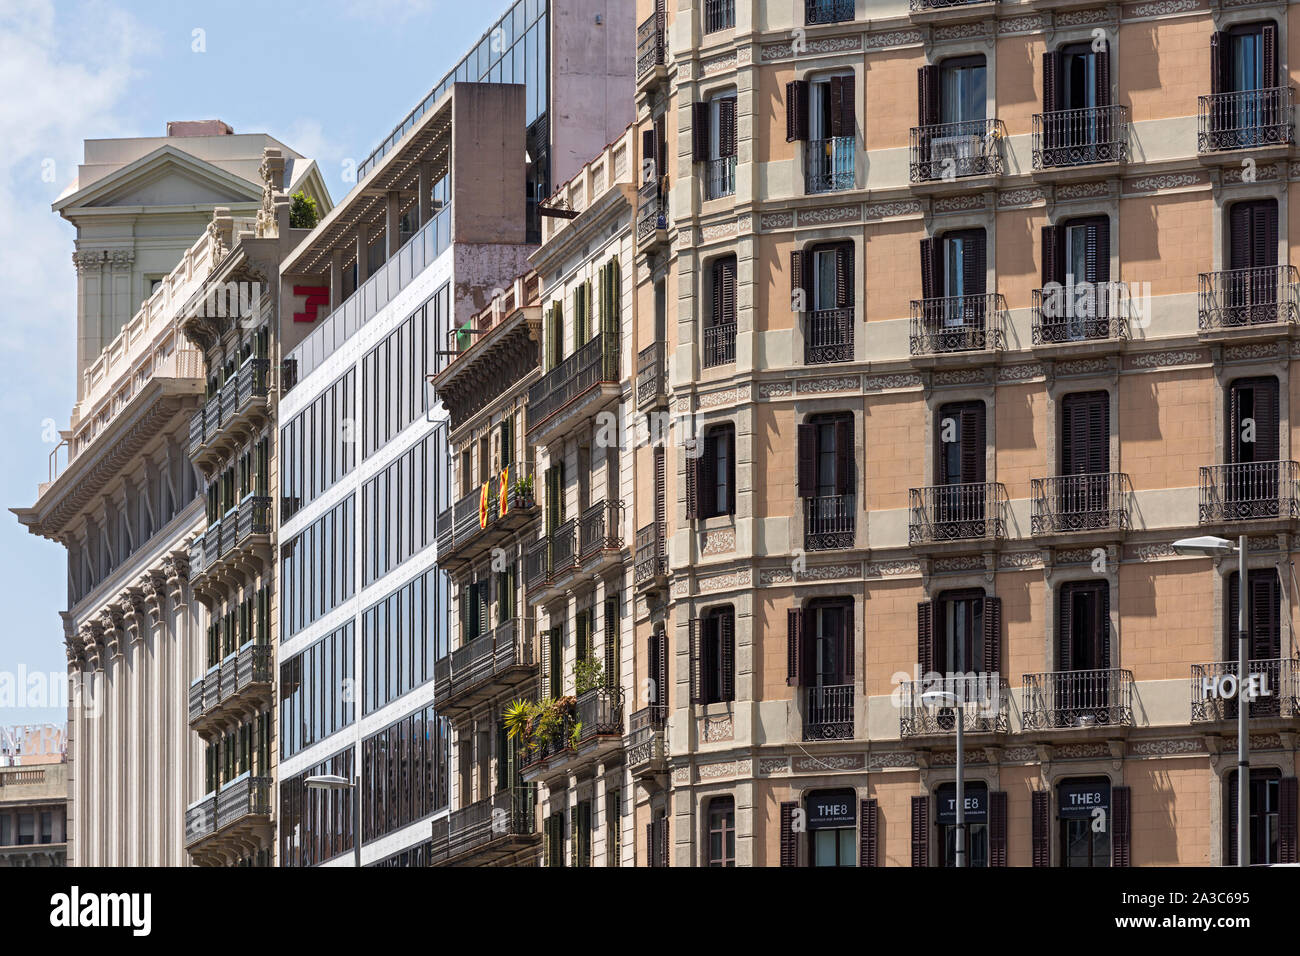 Barcellona; Carrer d'Arrago, Hotel, Wohnhaeuser, Fassade, Gruenderzeit, Modernisme, Ausschnitt Foto Stock